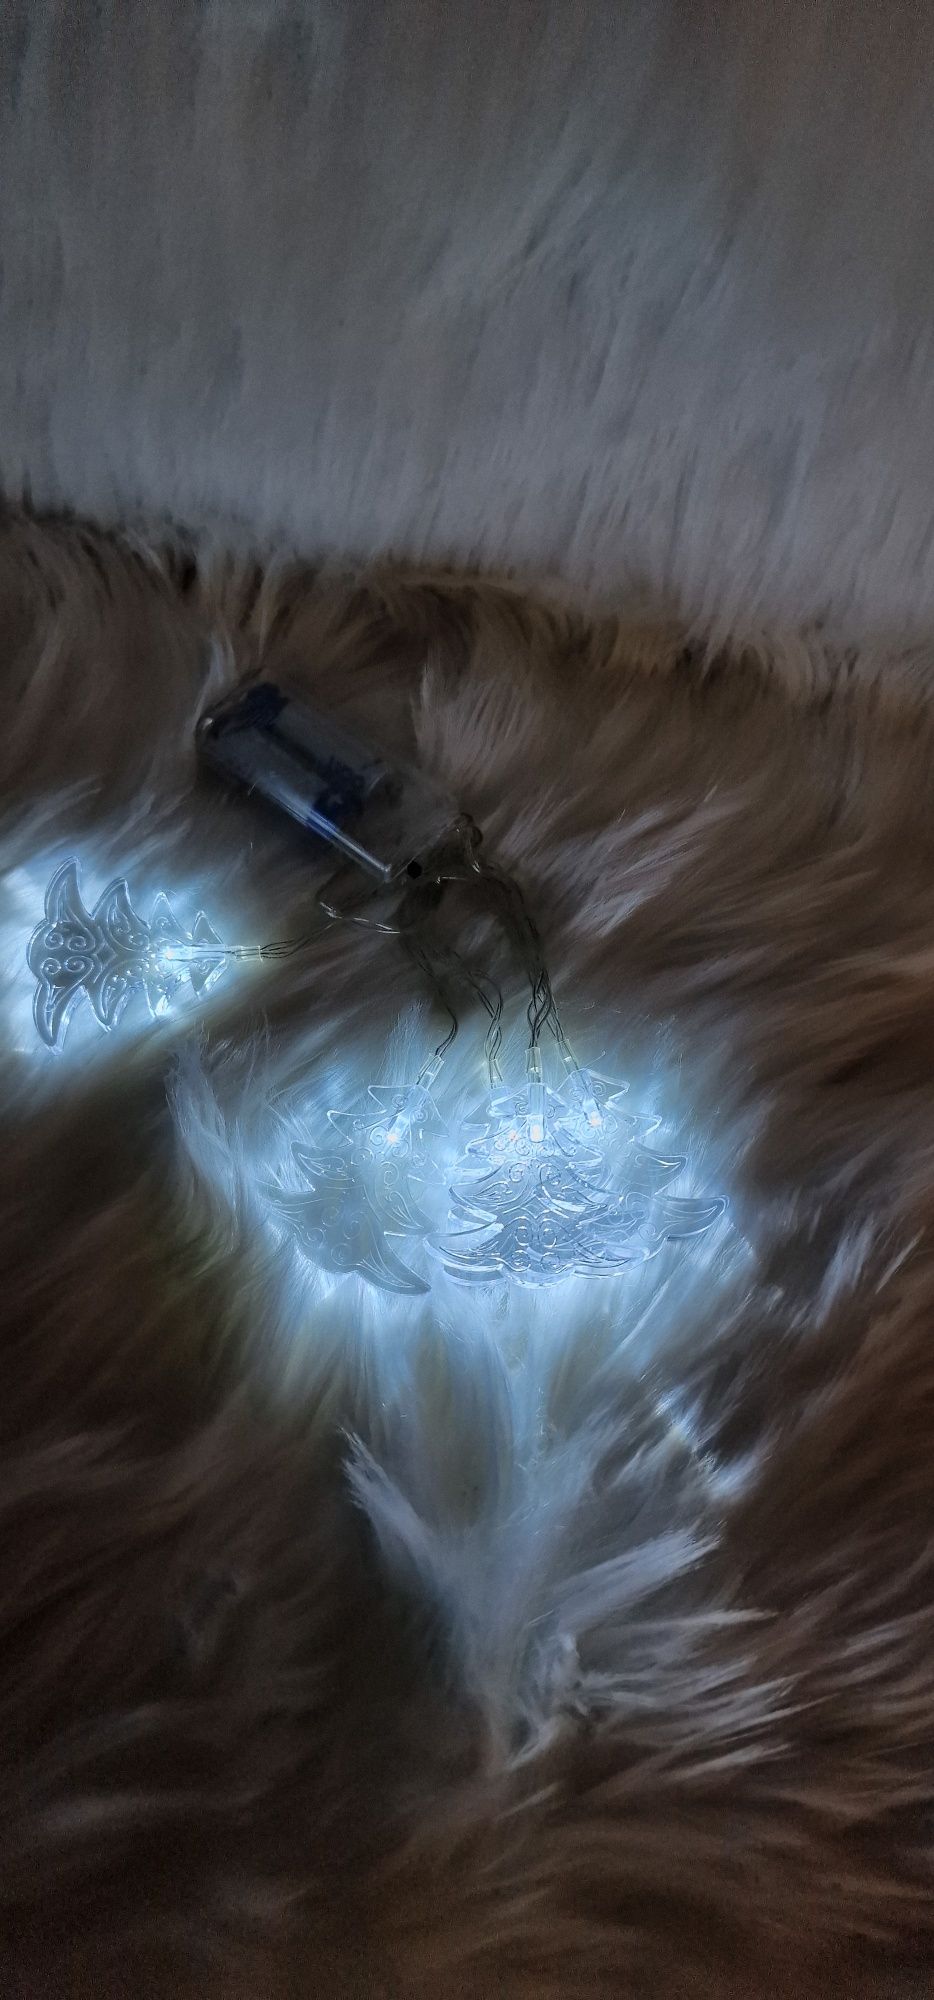 Girlanda choinki 5 LED kolor zimnym biały 
Wysokość choinki 5,5 cm

Sz